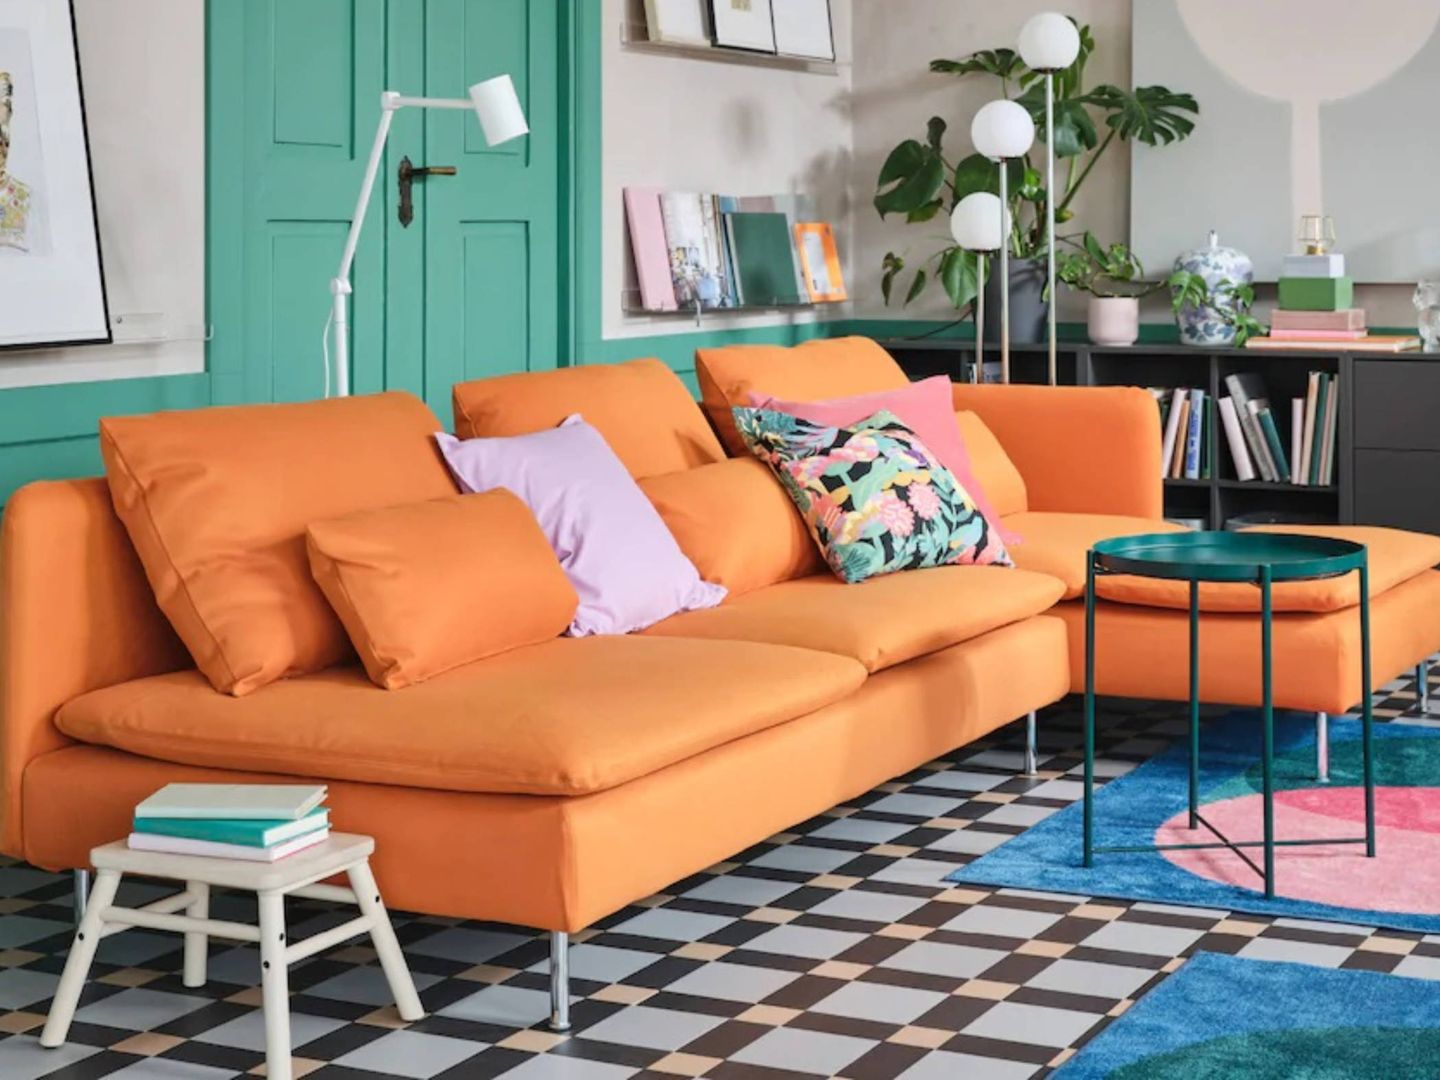 Añade color a tu hogar con Ikea. (Cortesía)